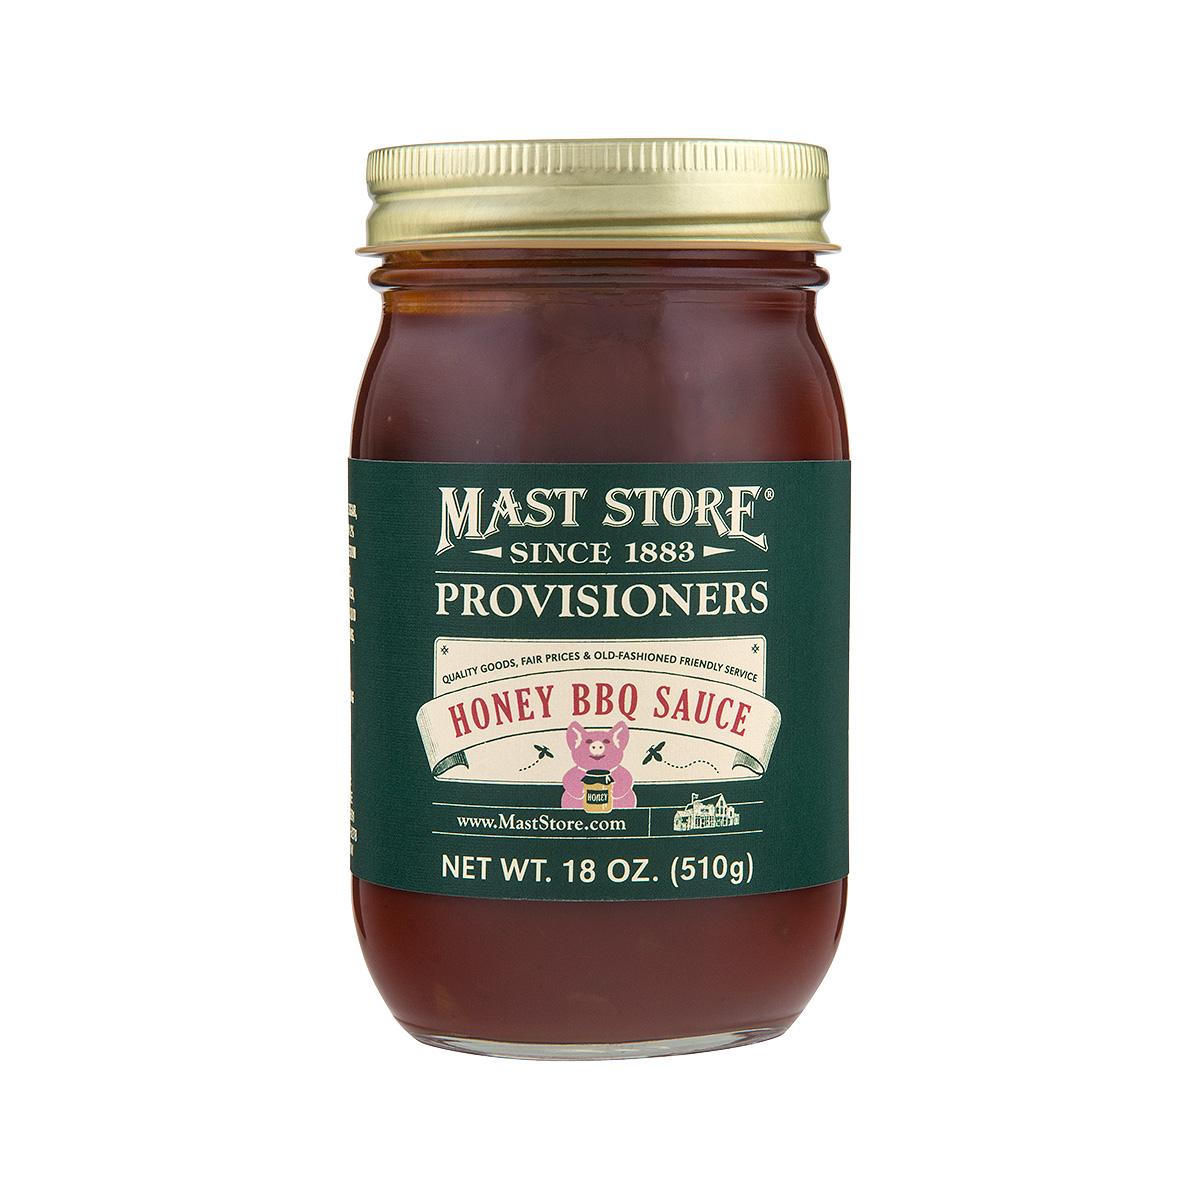  Mast Store Provisioners Honey Bbq Sauce - Pint